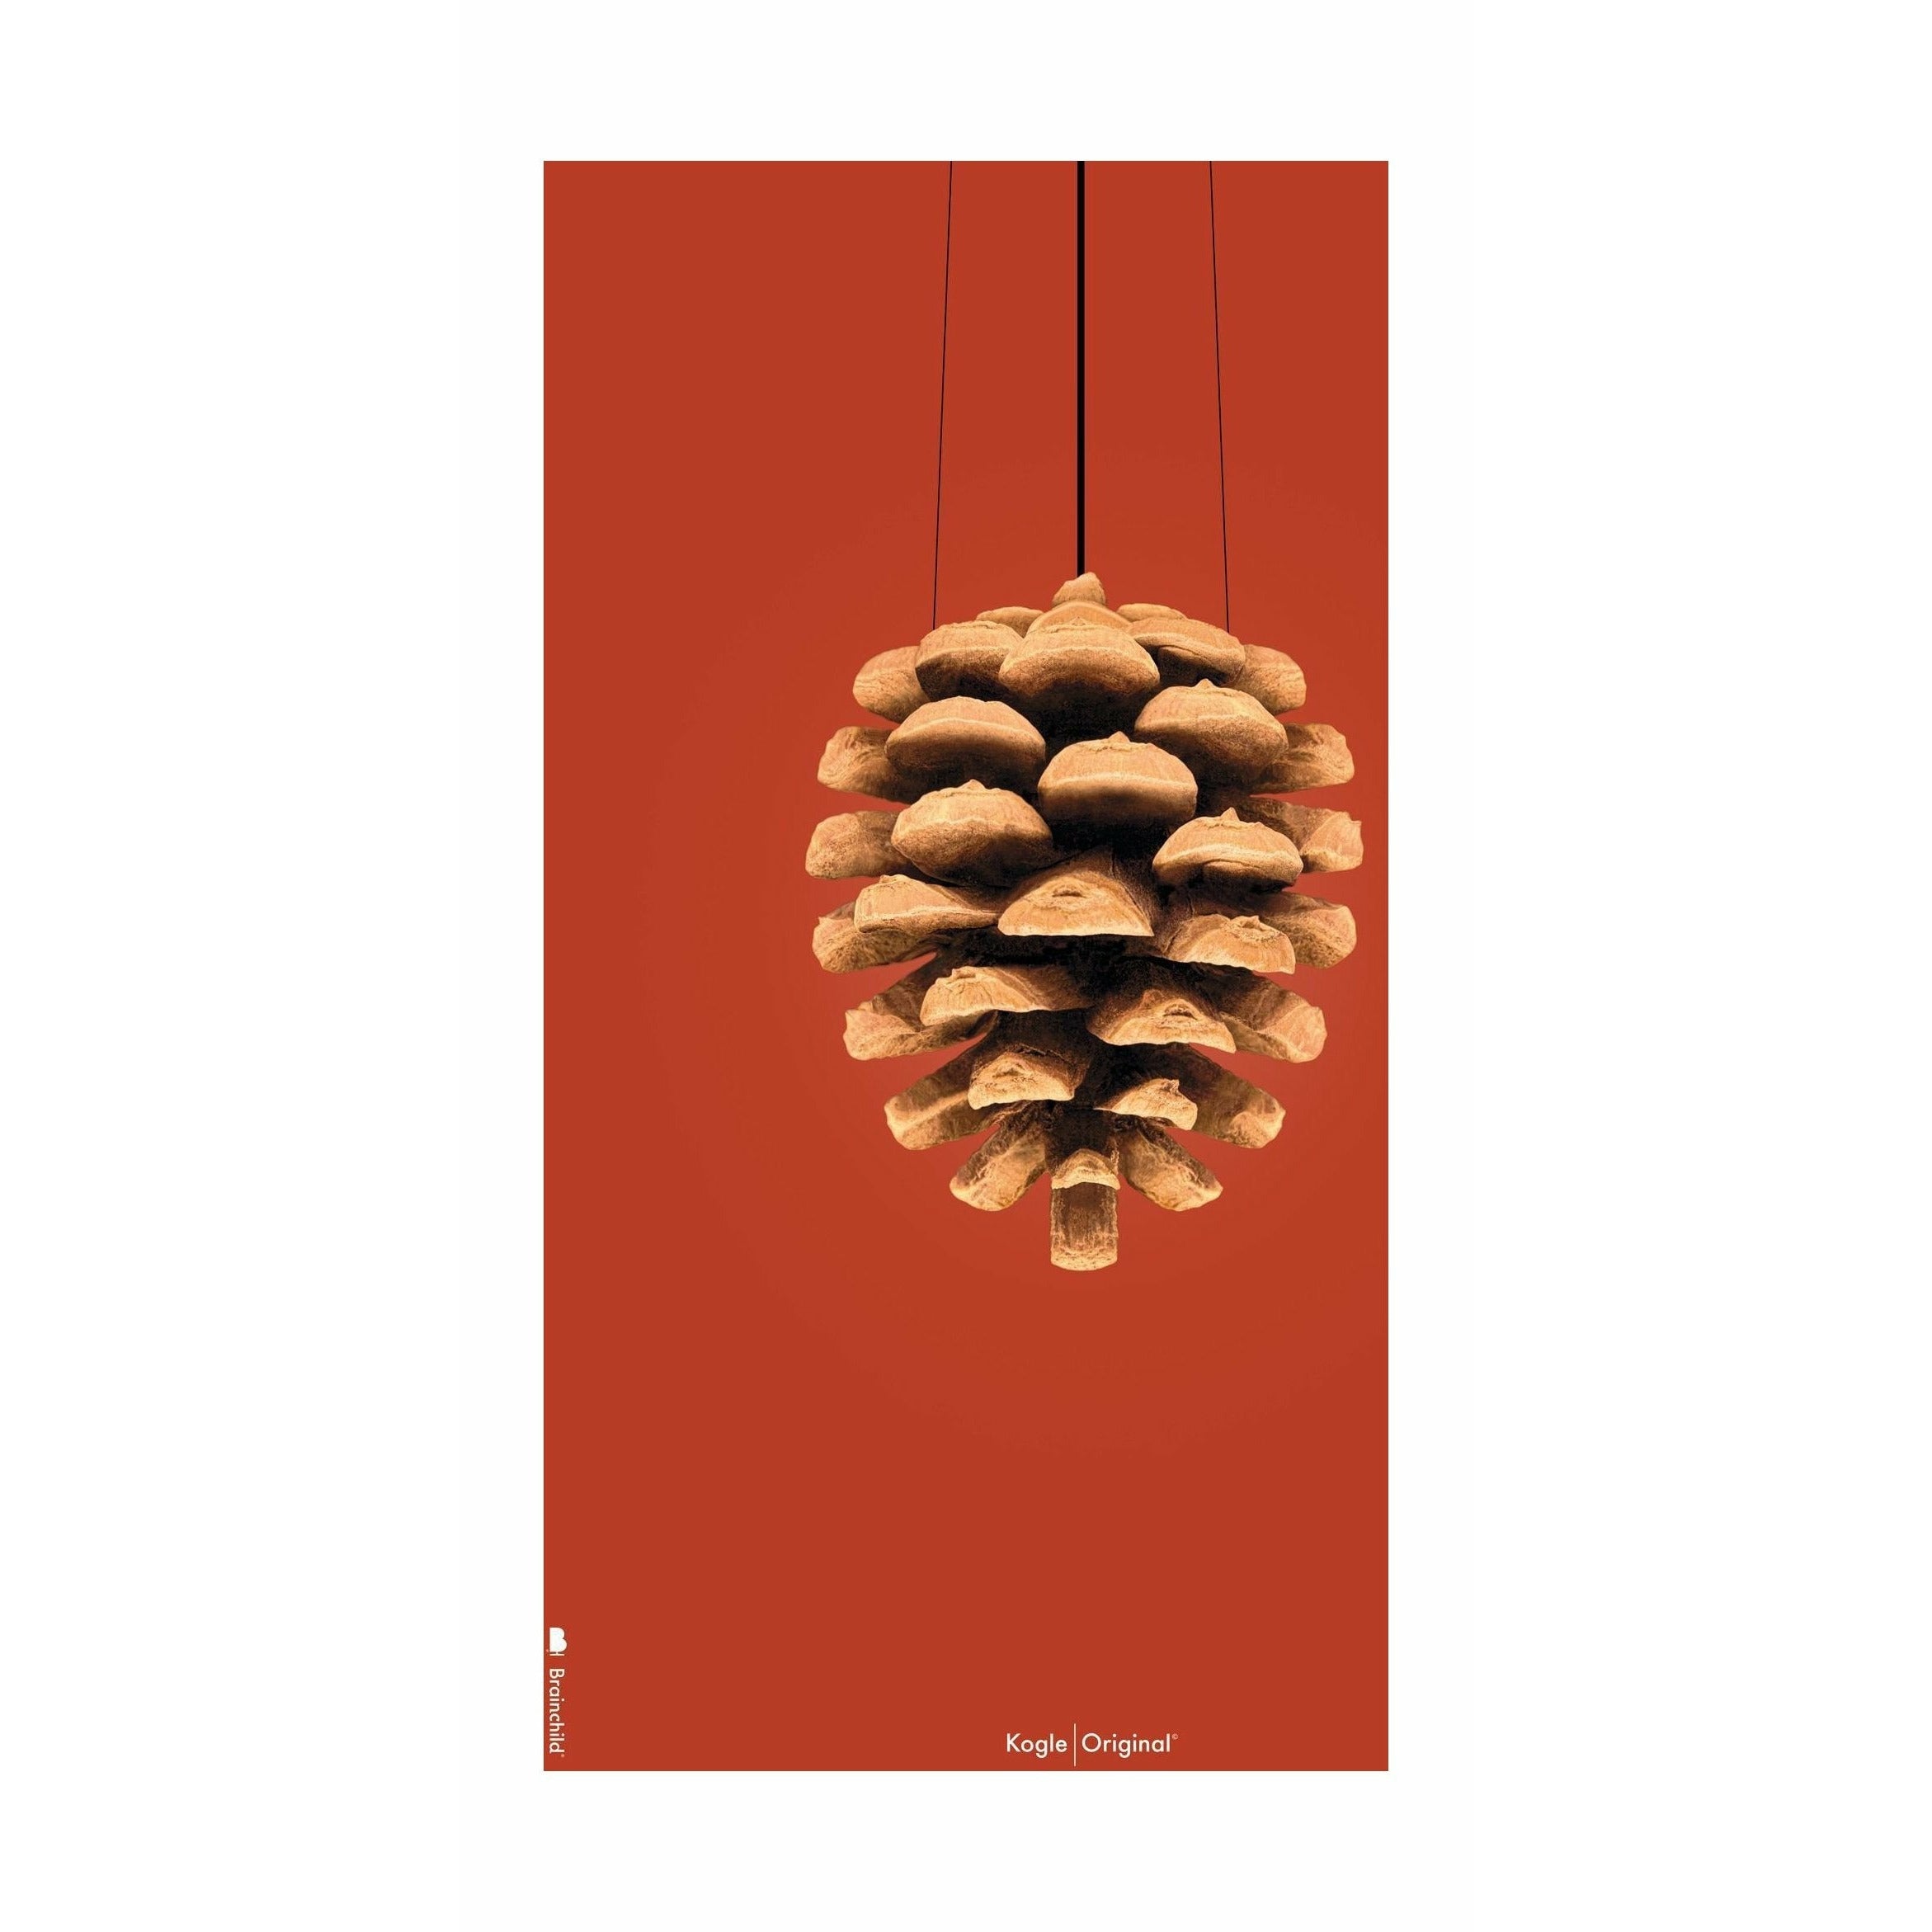 Poster classico di cono di pino da frutto senza fotogramma A5, sfondo rosso